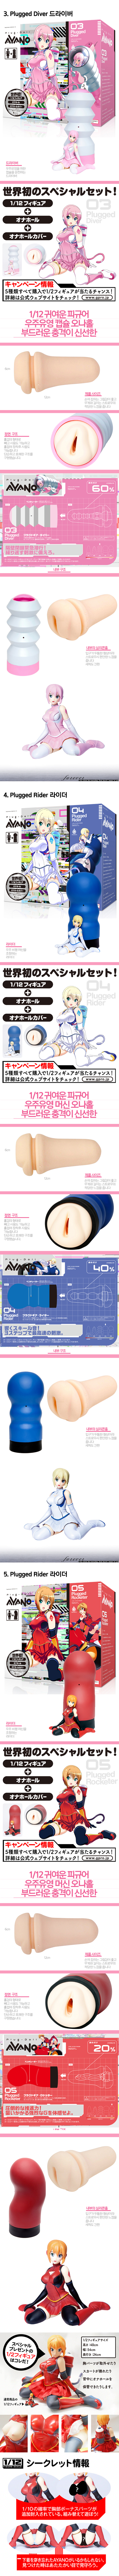        [일본 직수입] 피겨 +오나 세트 플러그돌 아야노시리즈(フィギュア+オナホールセットPlug-Doll AYANO[プラグドールアヤノ])        